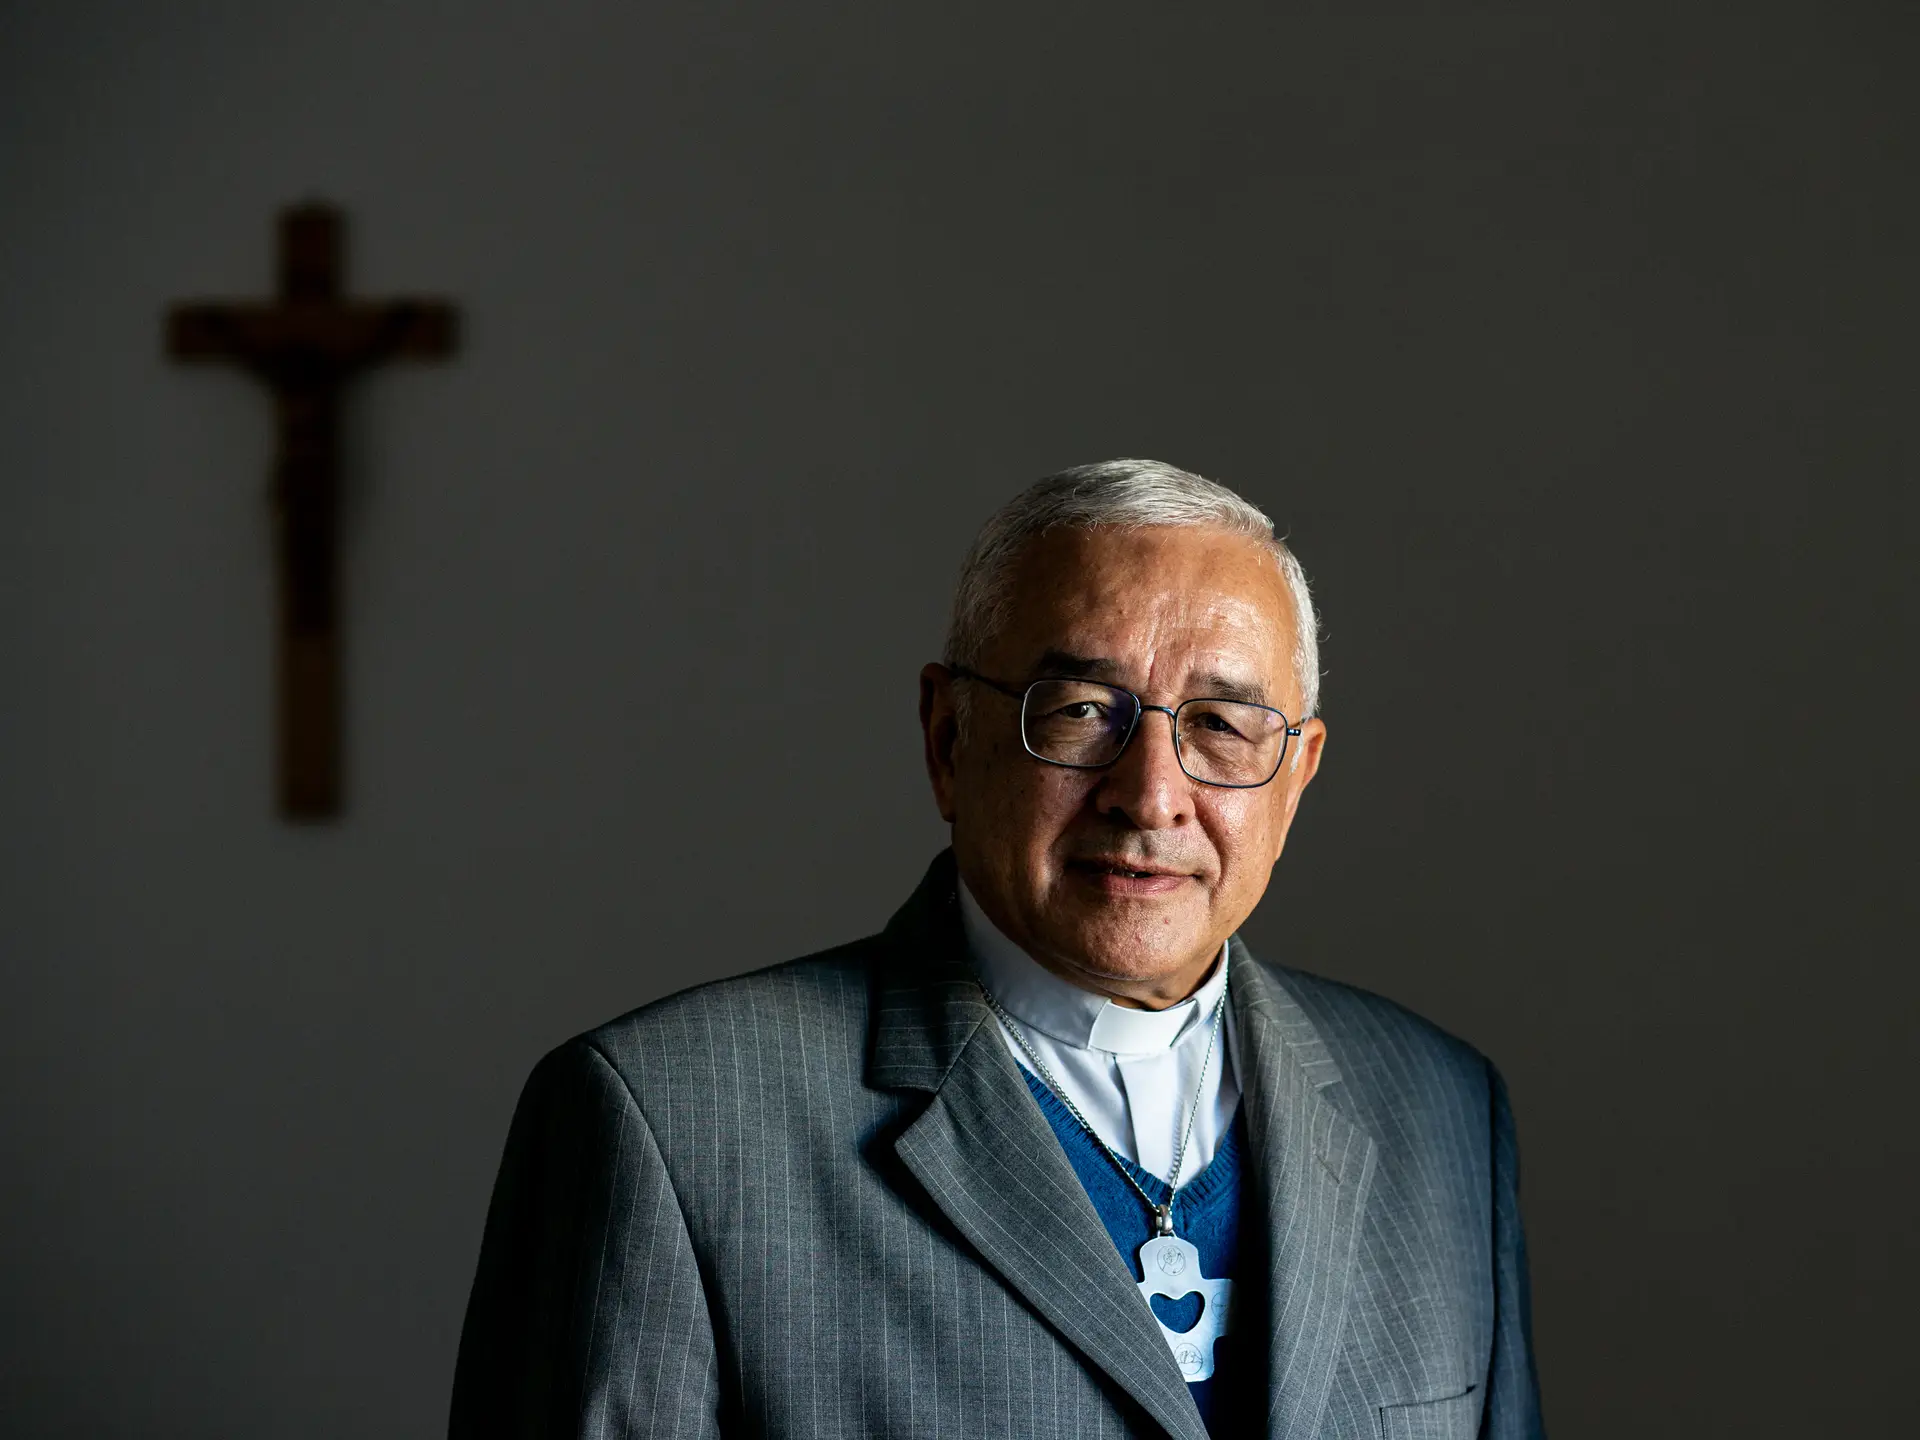 Bispo José Ornelas investigado por encobrir abuso de crianças